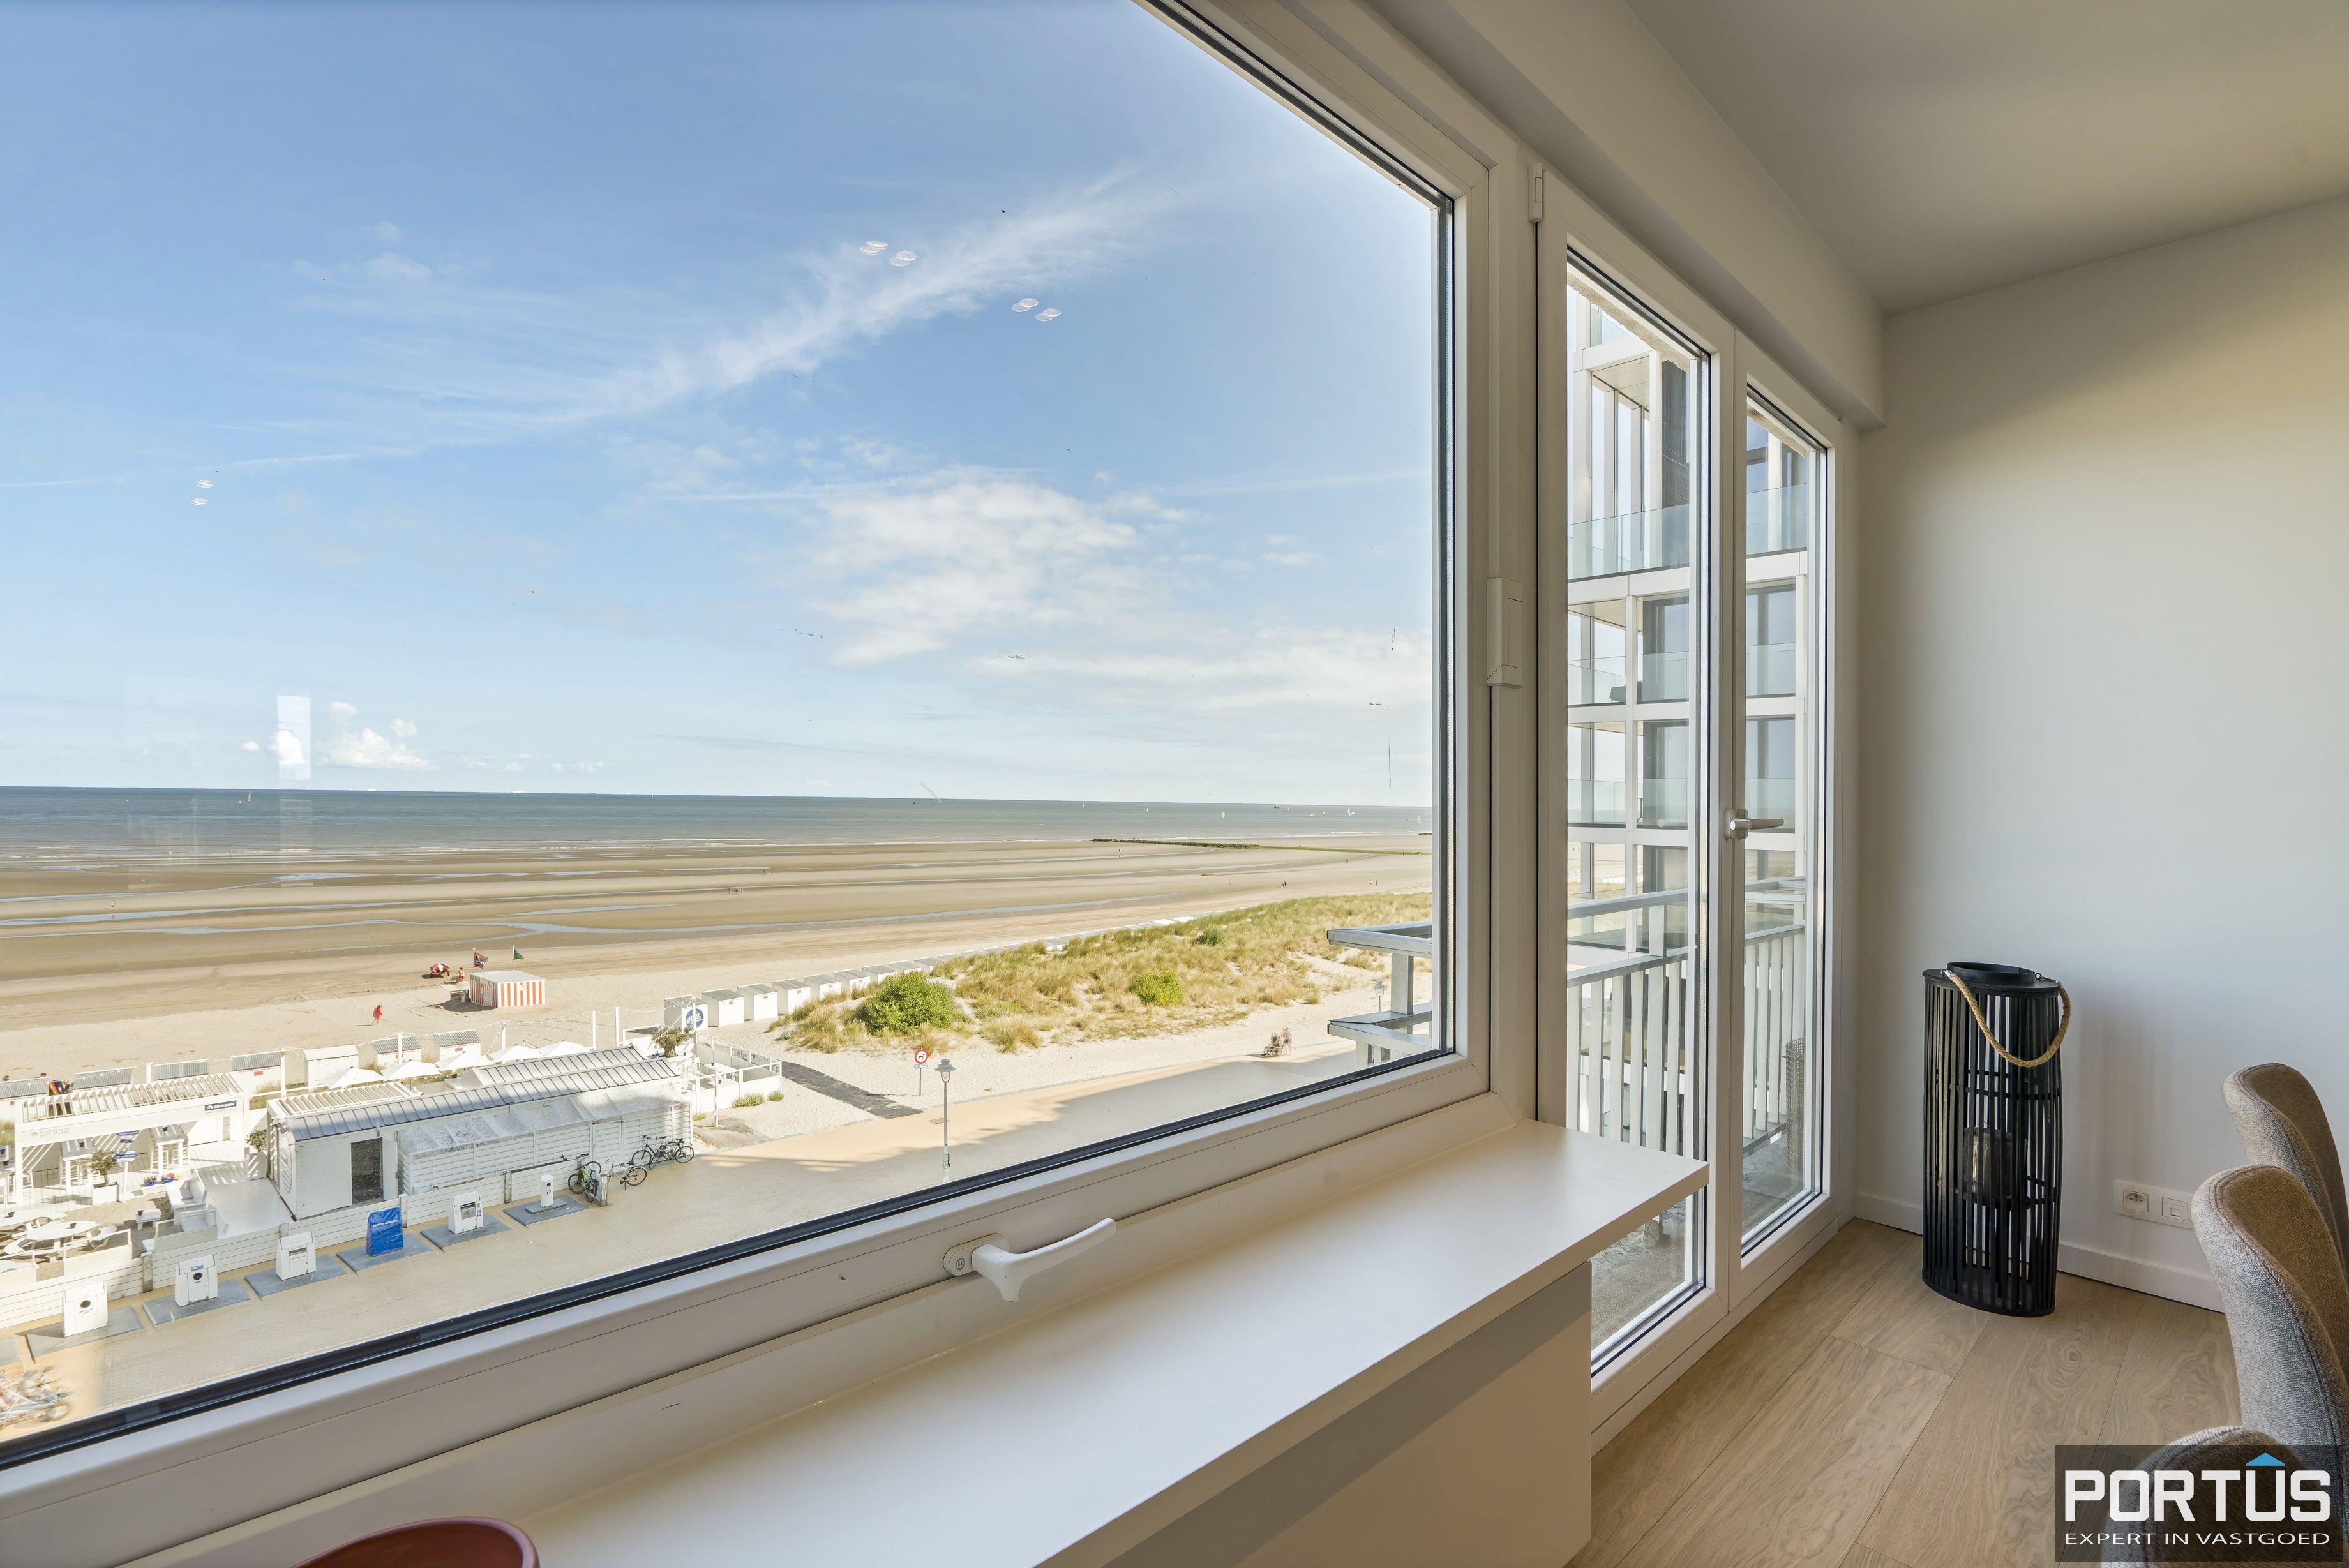 Exclusief appartement met frontaal zeezicht te koop te Nieuwpoort - 15595